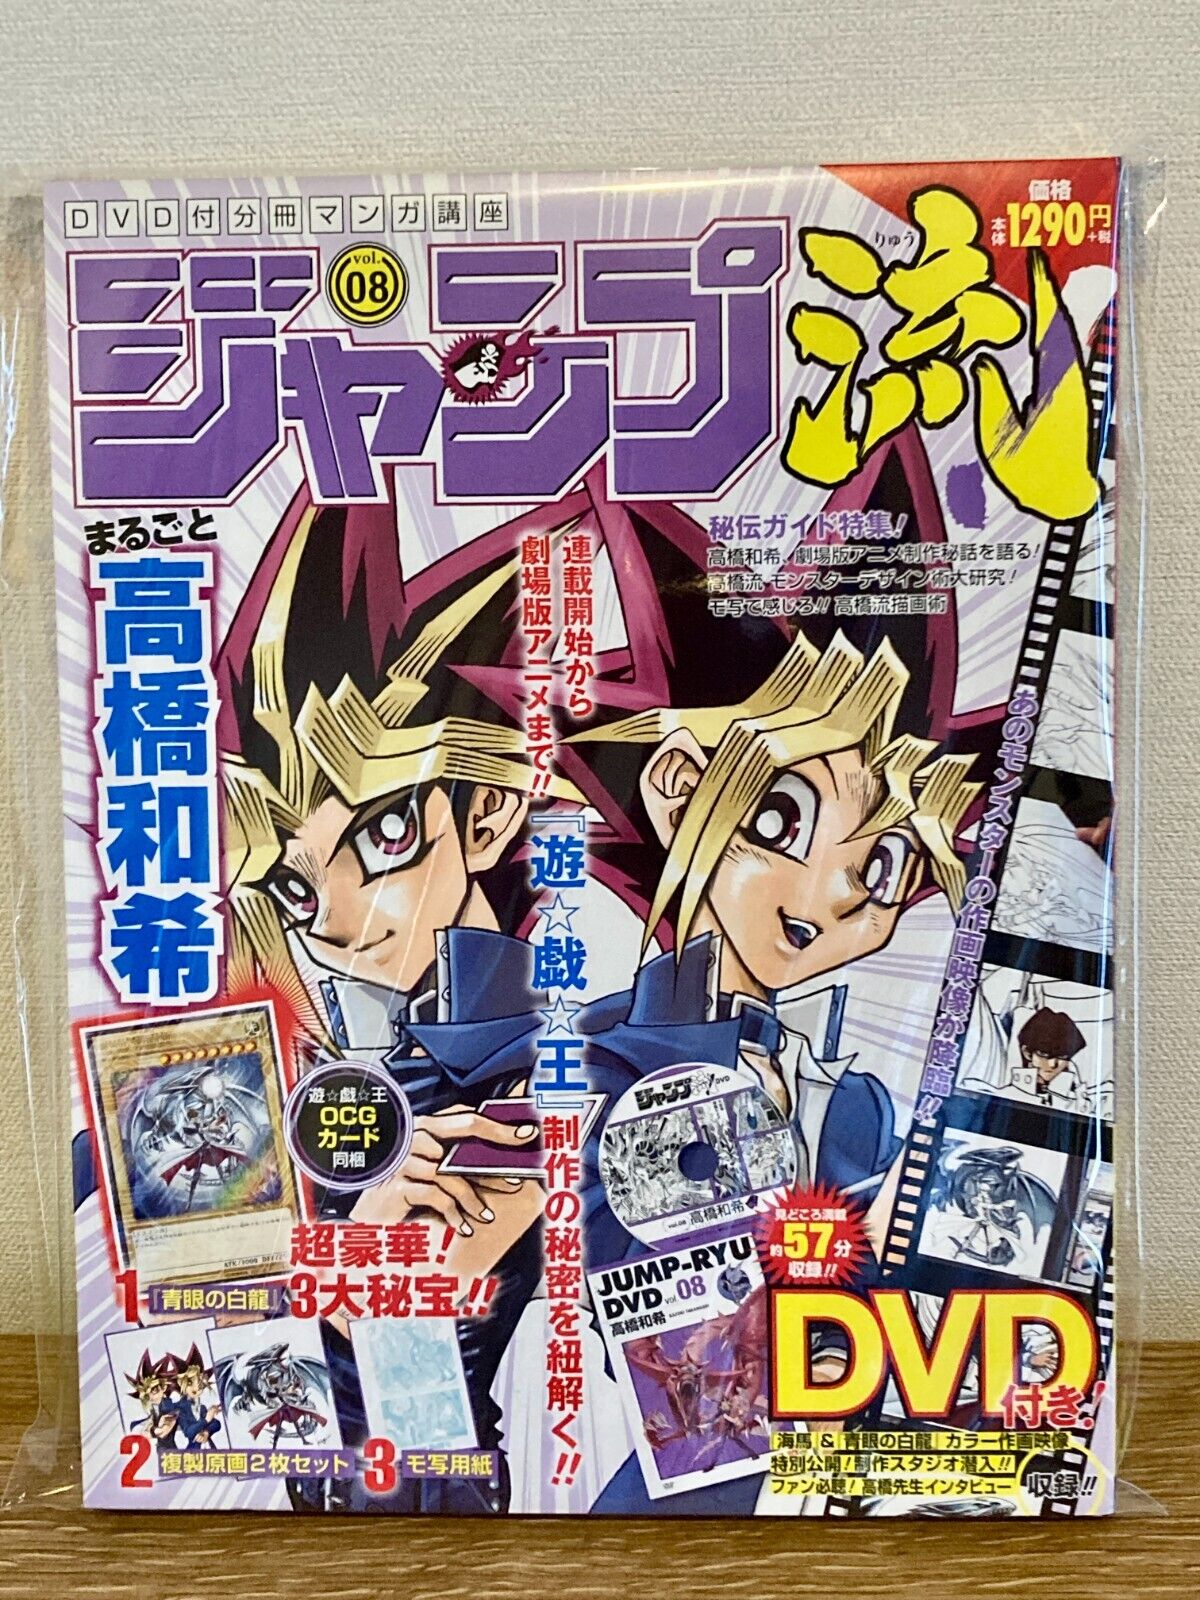 【NEW】Yu-Gi-Oh Kazuki Takahashi Jump-Ryu vol.8 OCG Card & DVD & Magazine Art Book